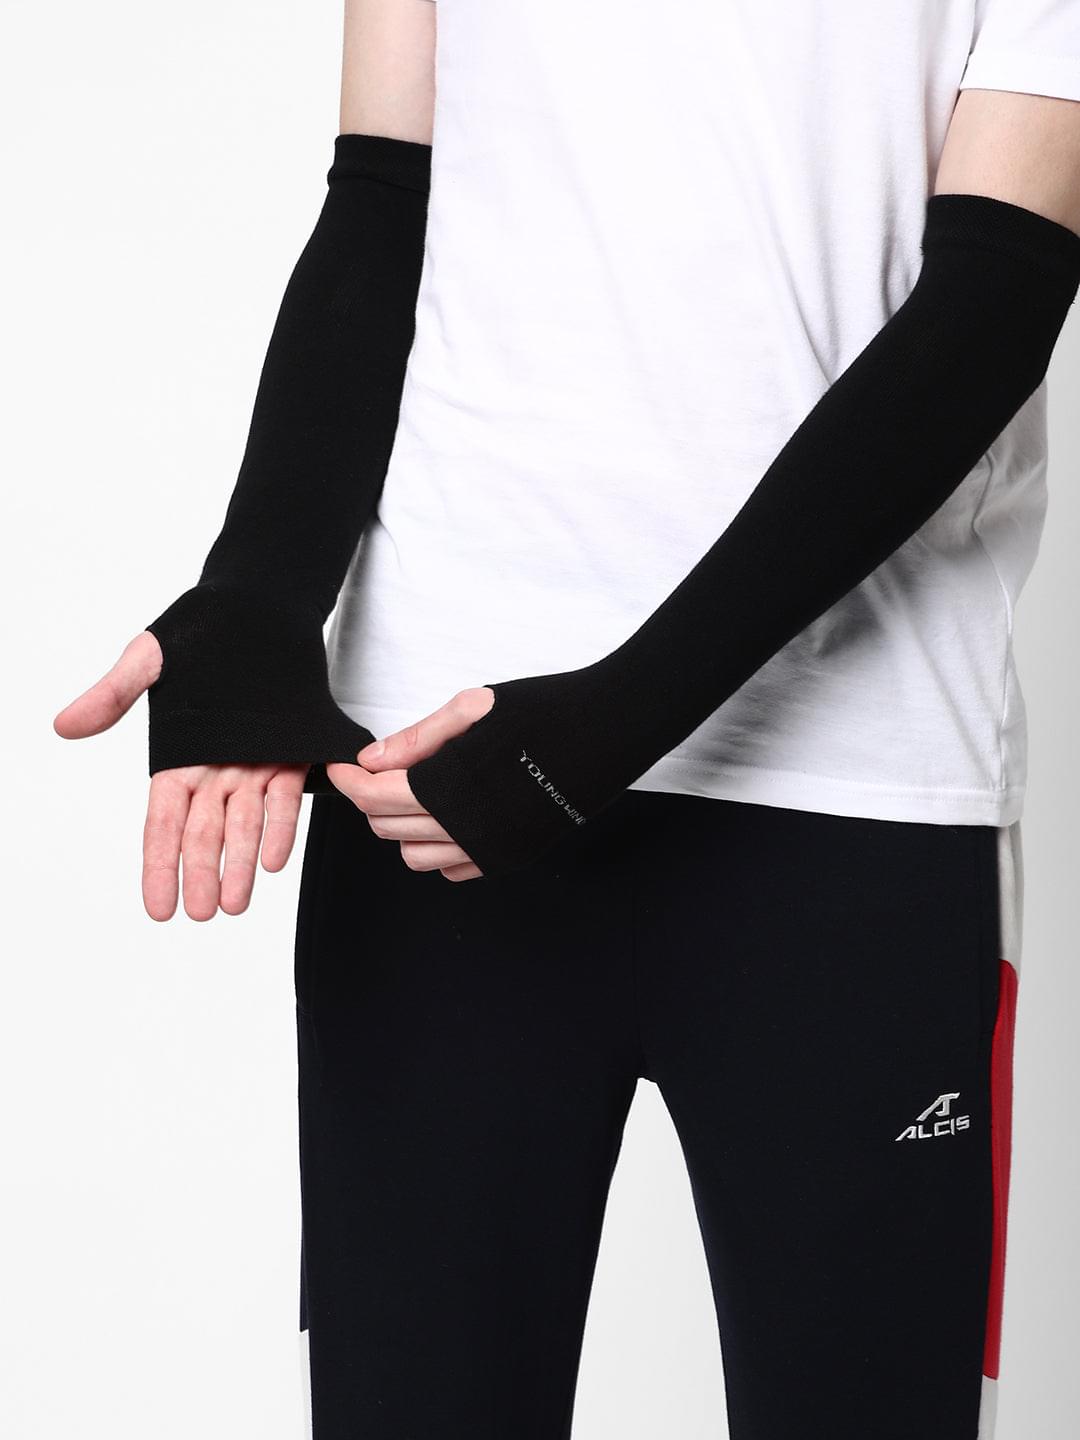 Antibacterial Arm Protectors/Sleeves for Men (Pack of 1 - Pair, UPF 50+)